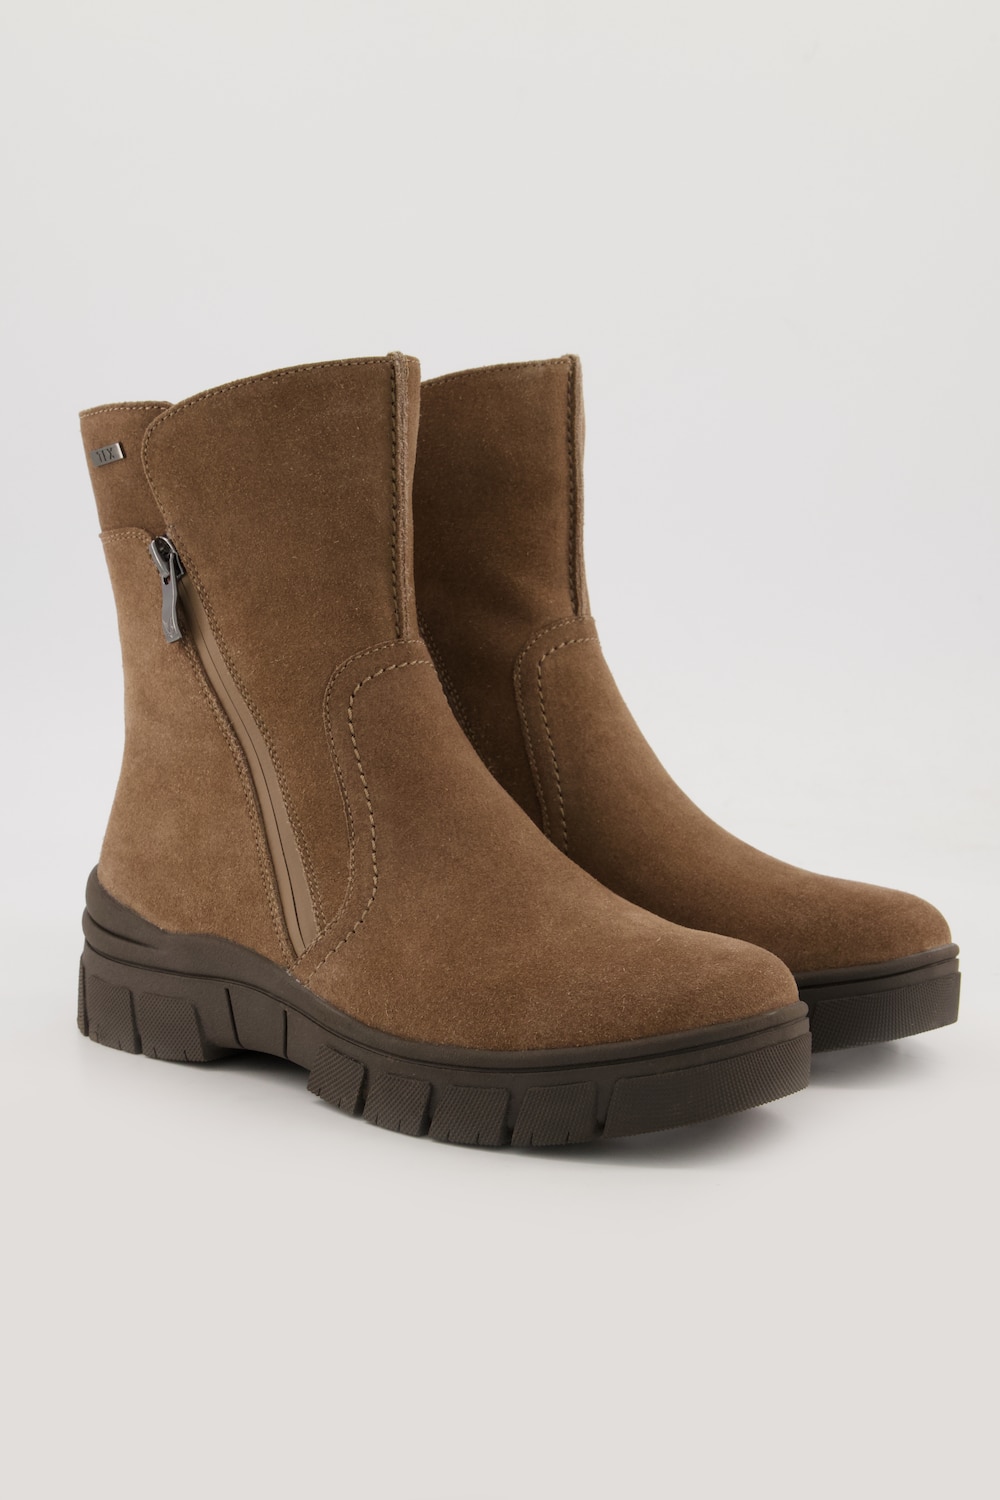 Caprice Leder-Boots, Damen, braun, Größe: 39, Leder/Sonstige/Synthetische Fasern, Ulla Popken von Ulla Popken